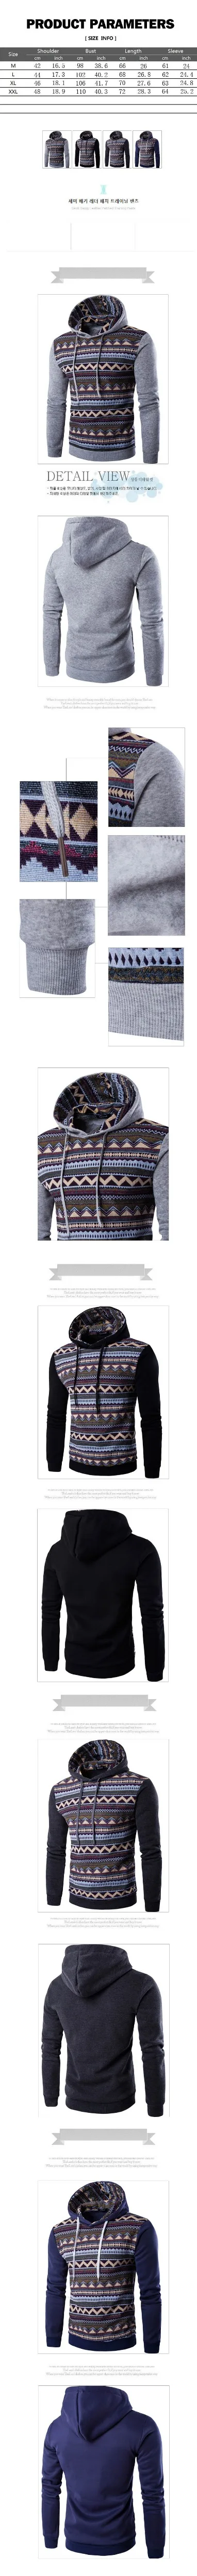 Мужская толстовка осень зима теплый вязаный мужской ретро Повседневный пуловер с капюшоном мужской классический хлопковый свитер Harajuku топы